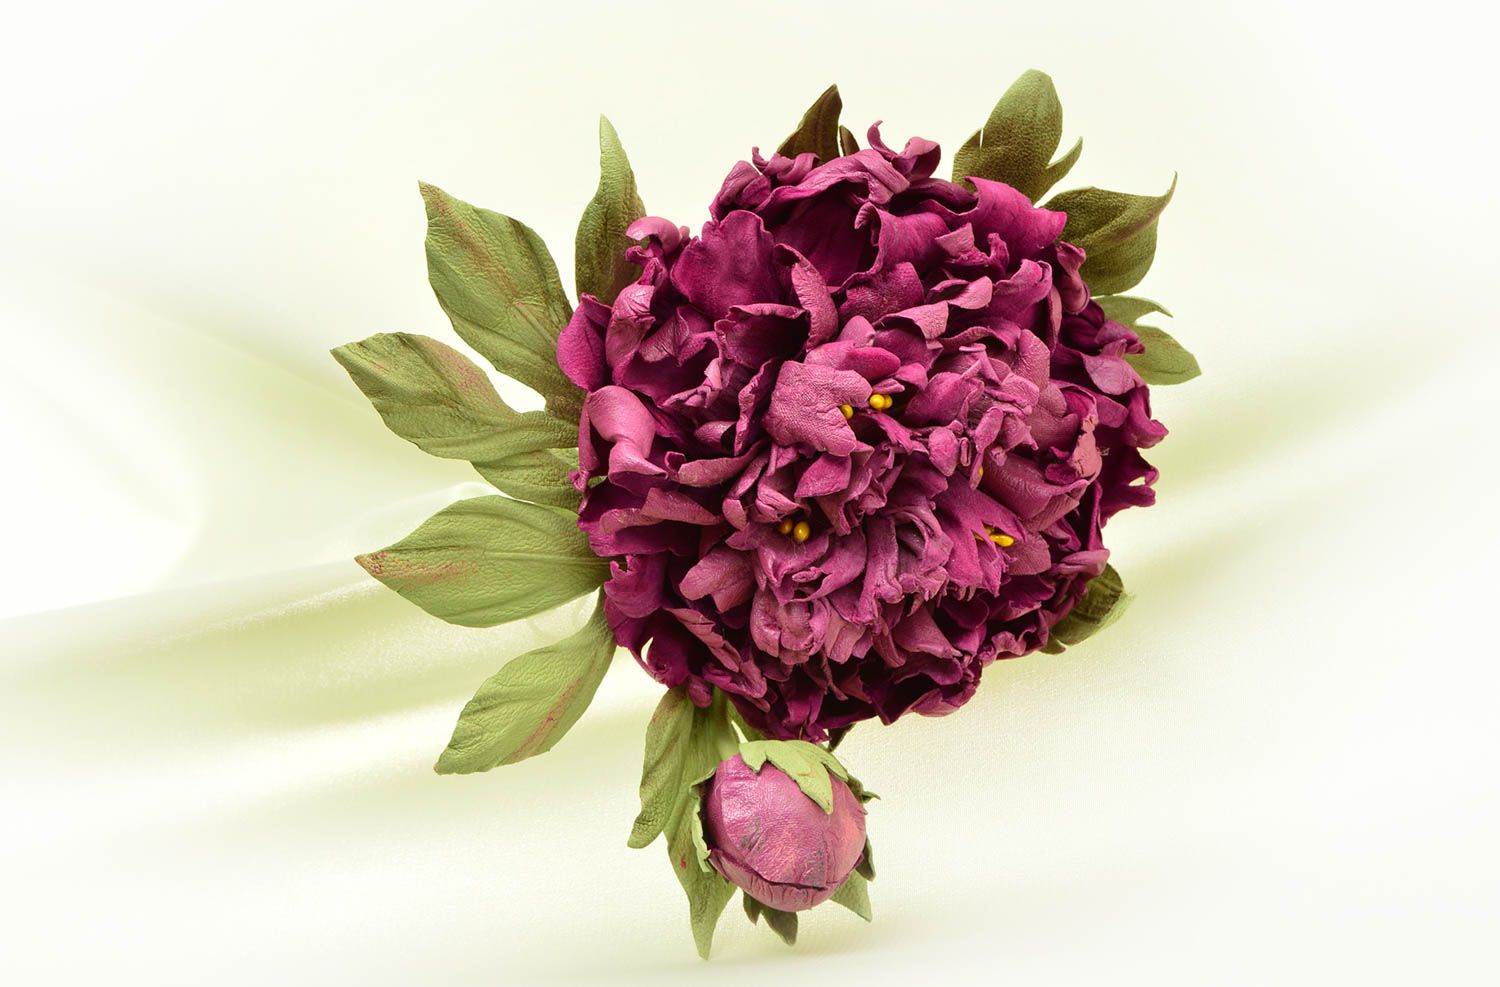 Авторская бижутерия хэнд мэйд красивая брошь фиолетовый цветок брошь из кожи фото 1